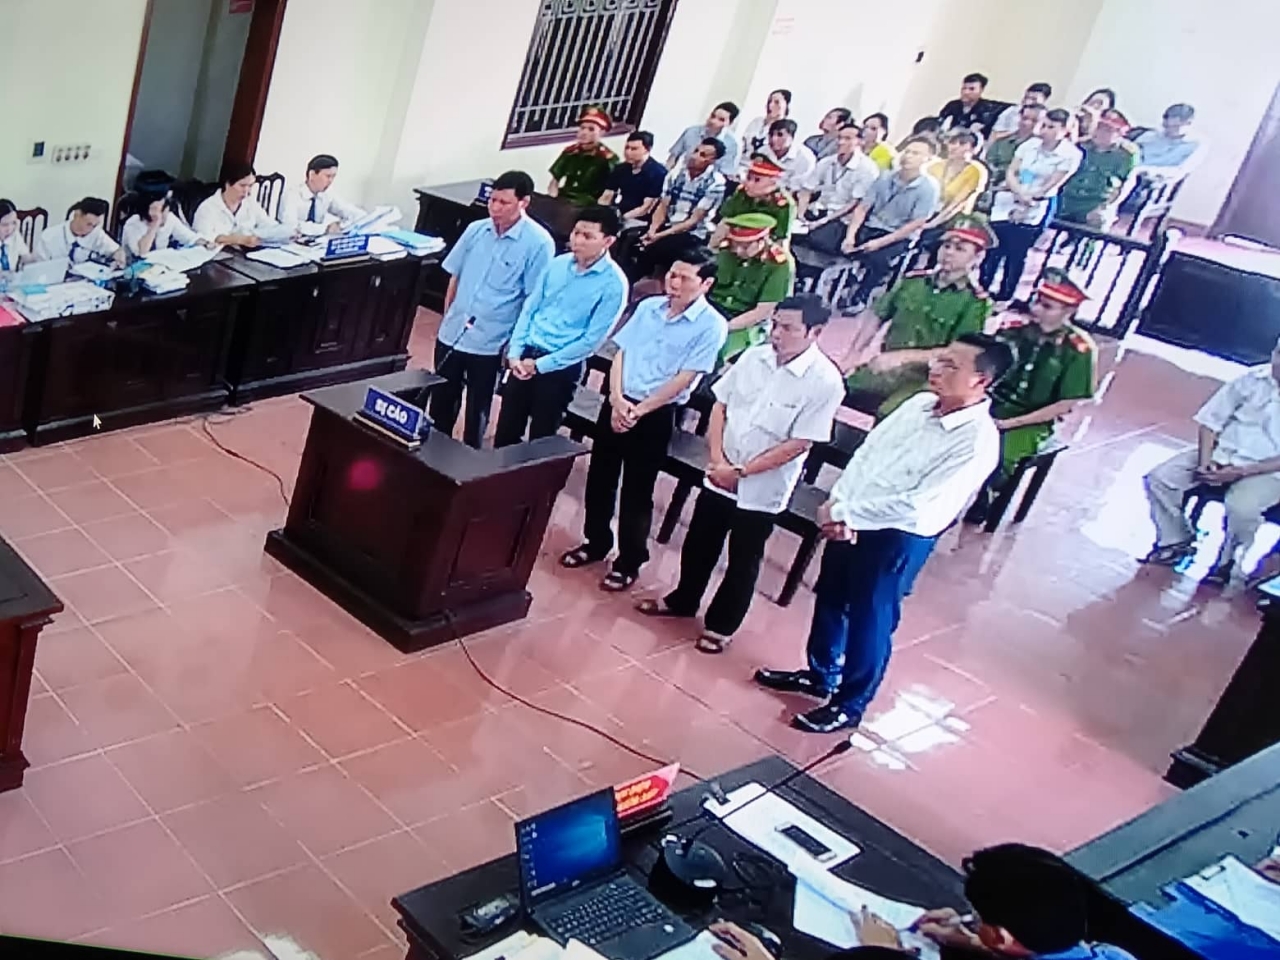 Phiên xử phúc thẩm cựu bác sĩ Hoàng Công Lương cùng 4 bị cáo trong vụ chạy thận làm 9 người chết xảy ra tại Bệnh viện đa khoa tỉnh Hòa Bình.